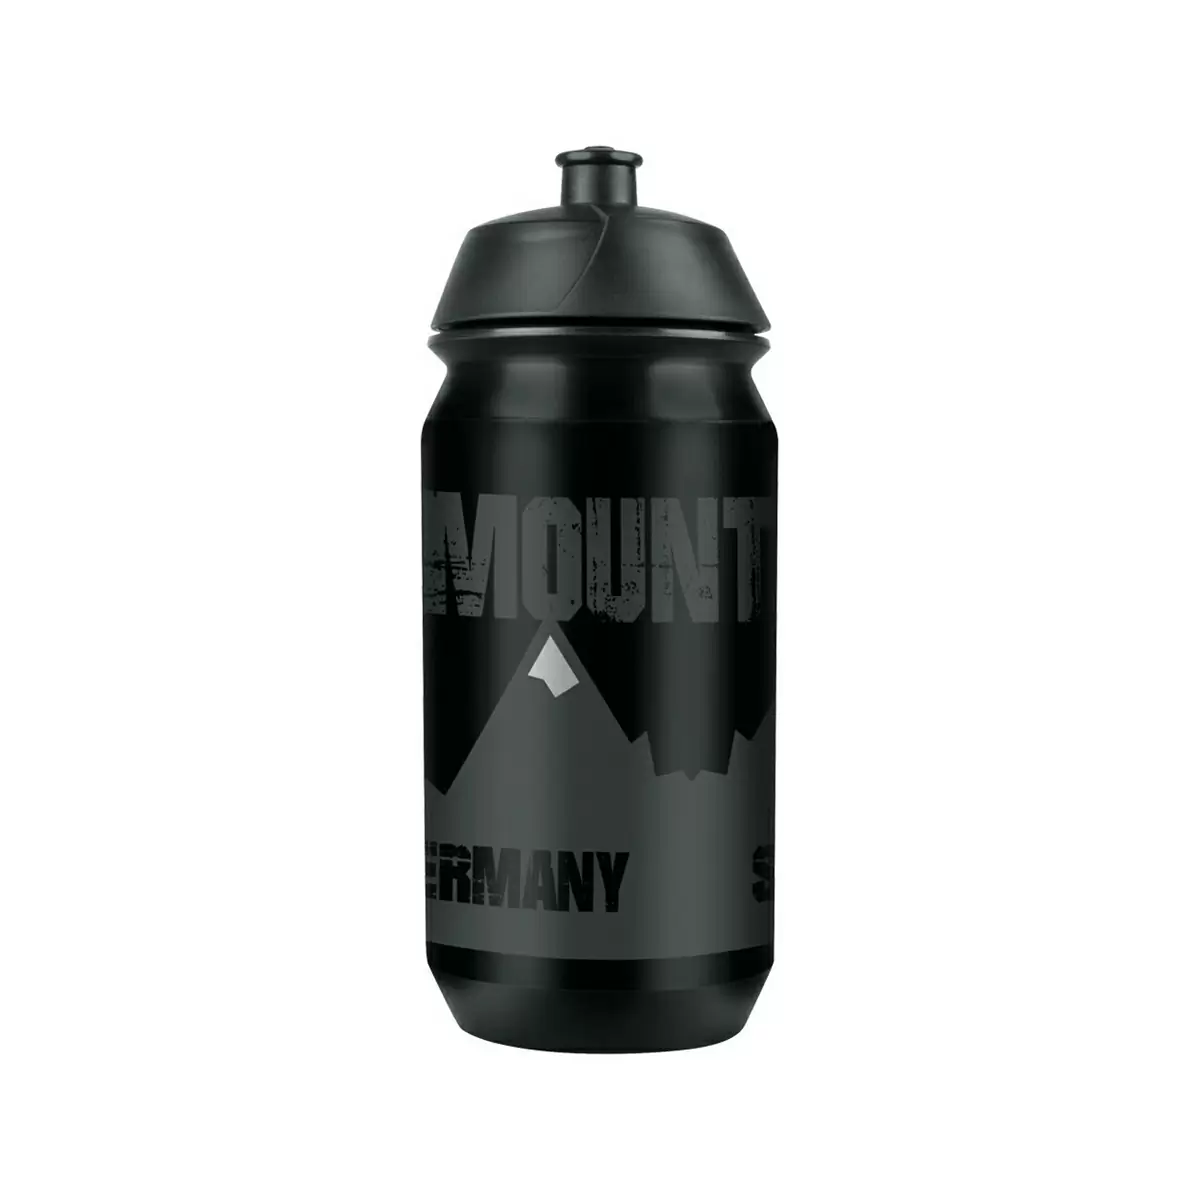 Water Bottle Mountain Large 500ml Black - image